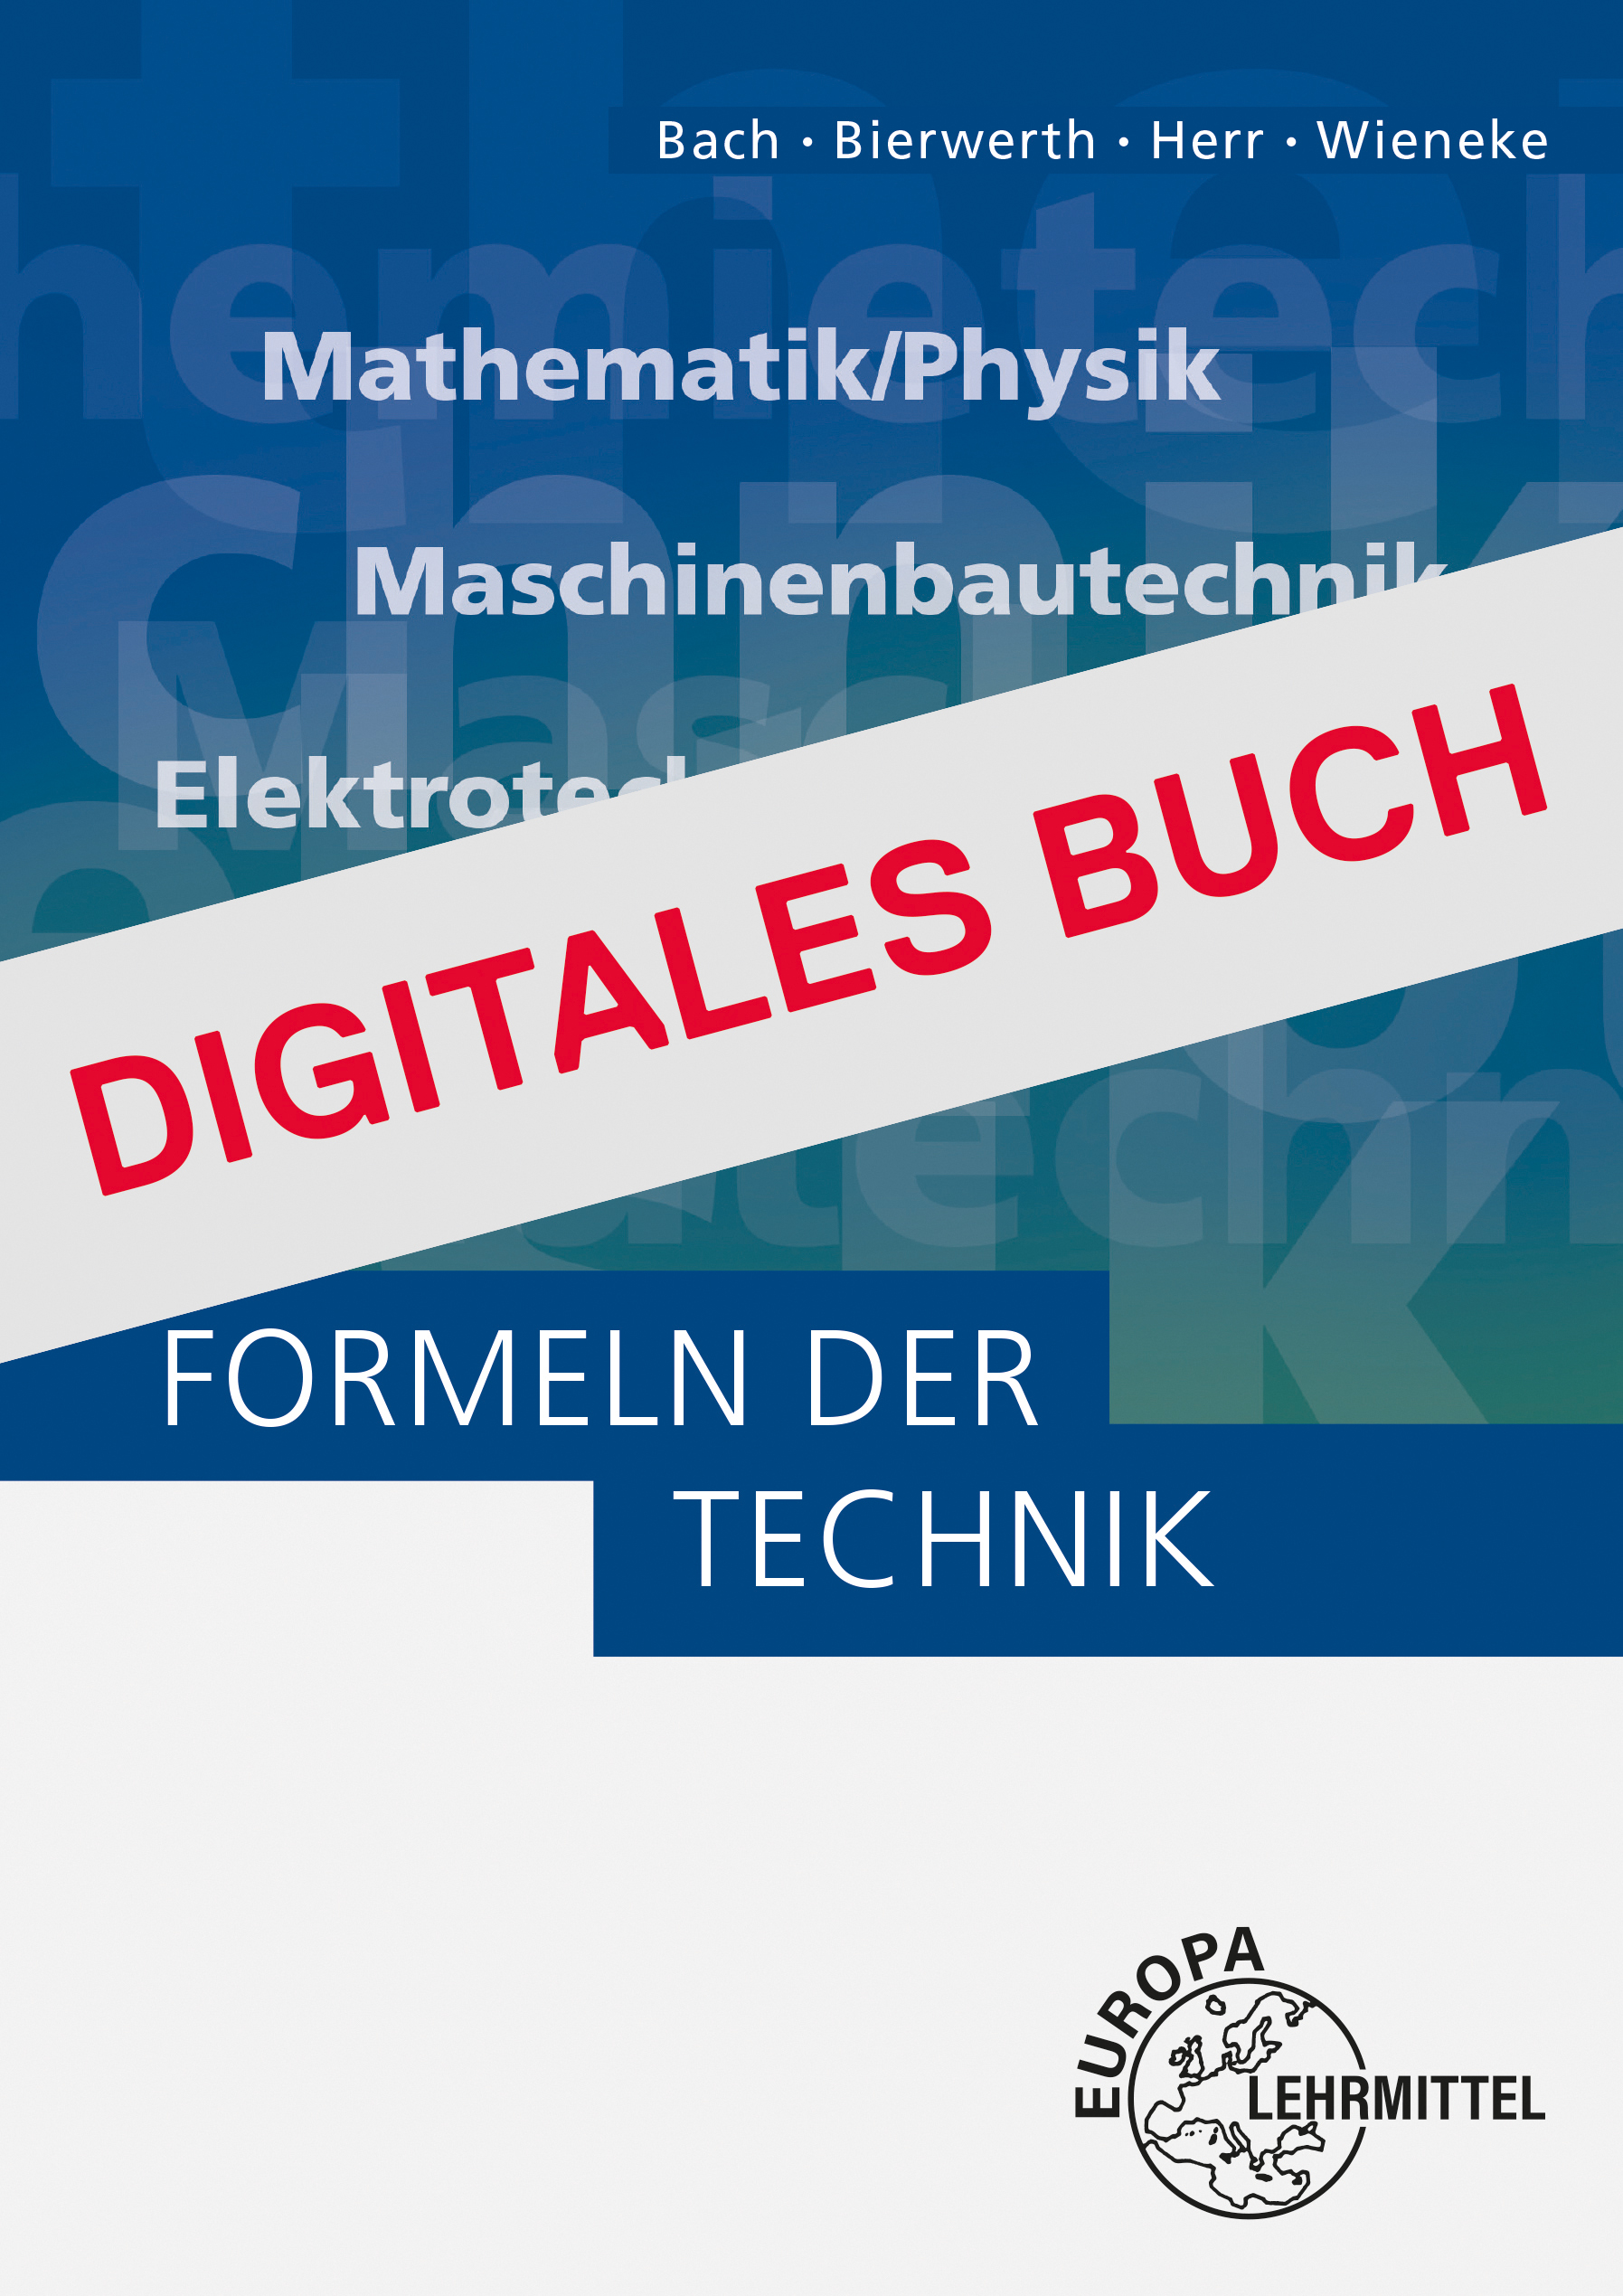 Formeln der Technik - Digitales Buch